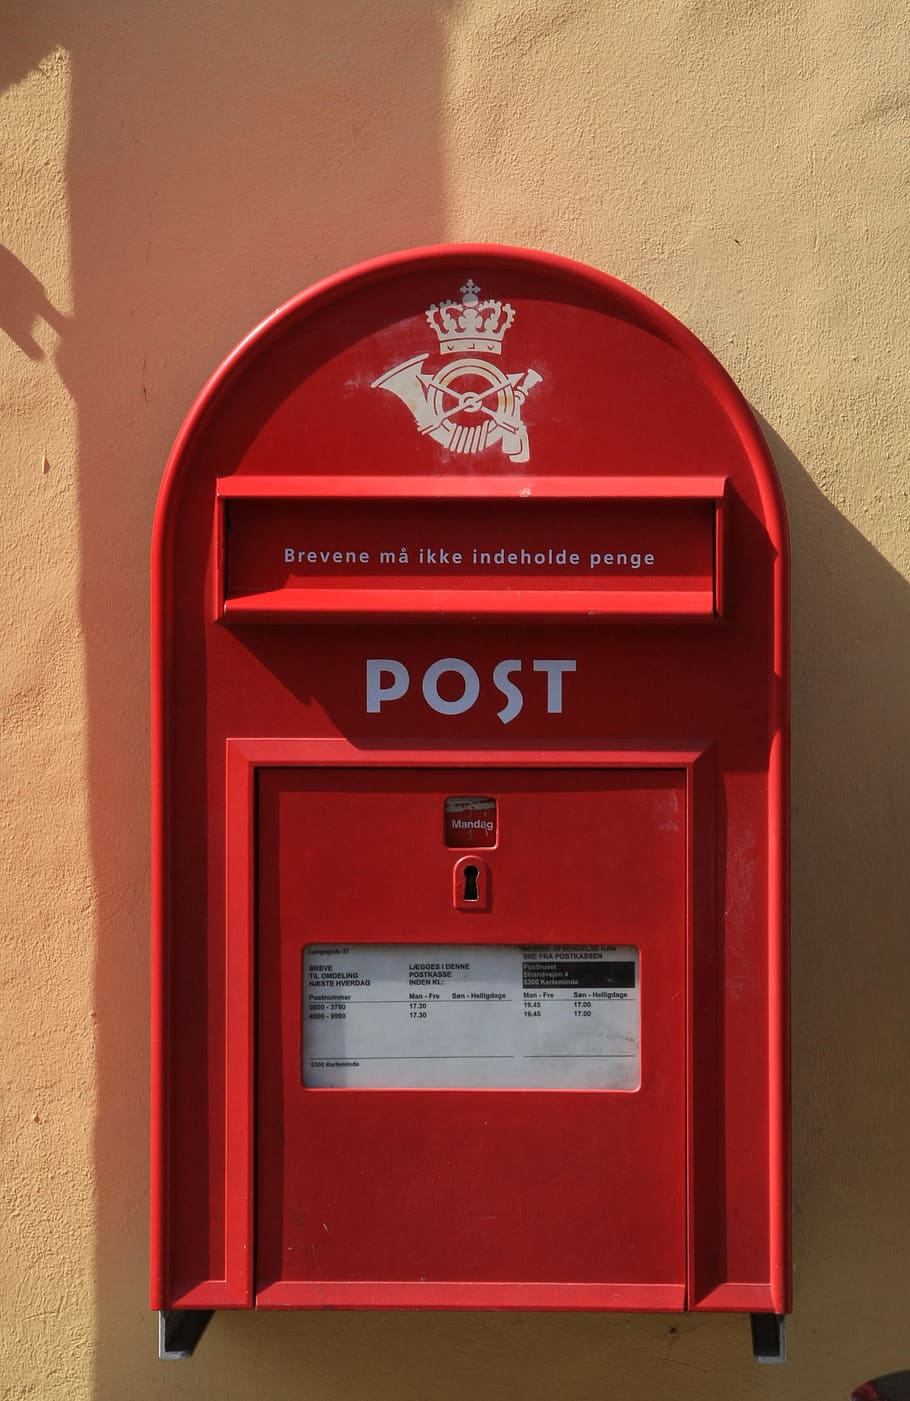 郵便ポスト, メール, メールボックス, ポスト, ボックス, 赤, 手紙, レターボックス, 郵便, コミュニケーション